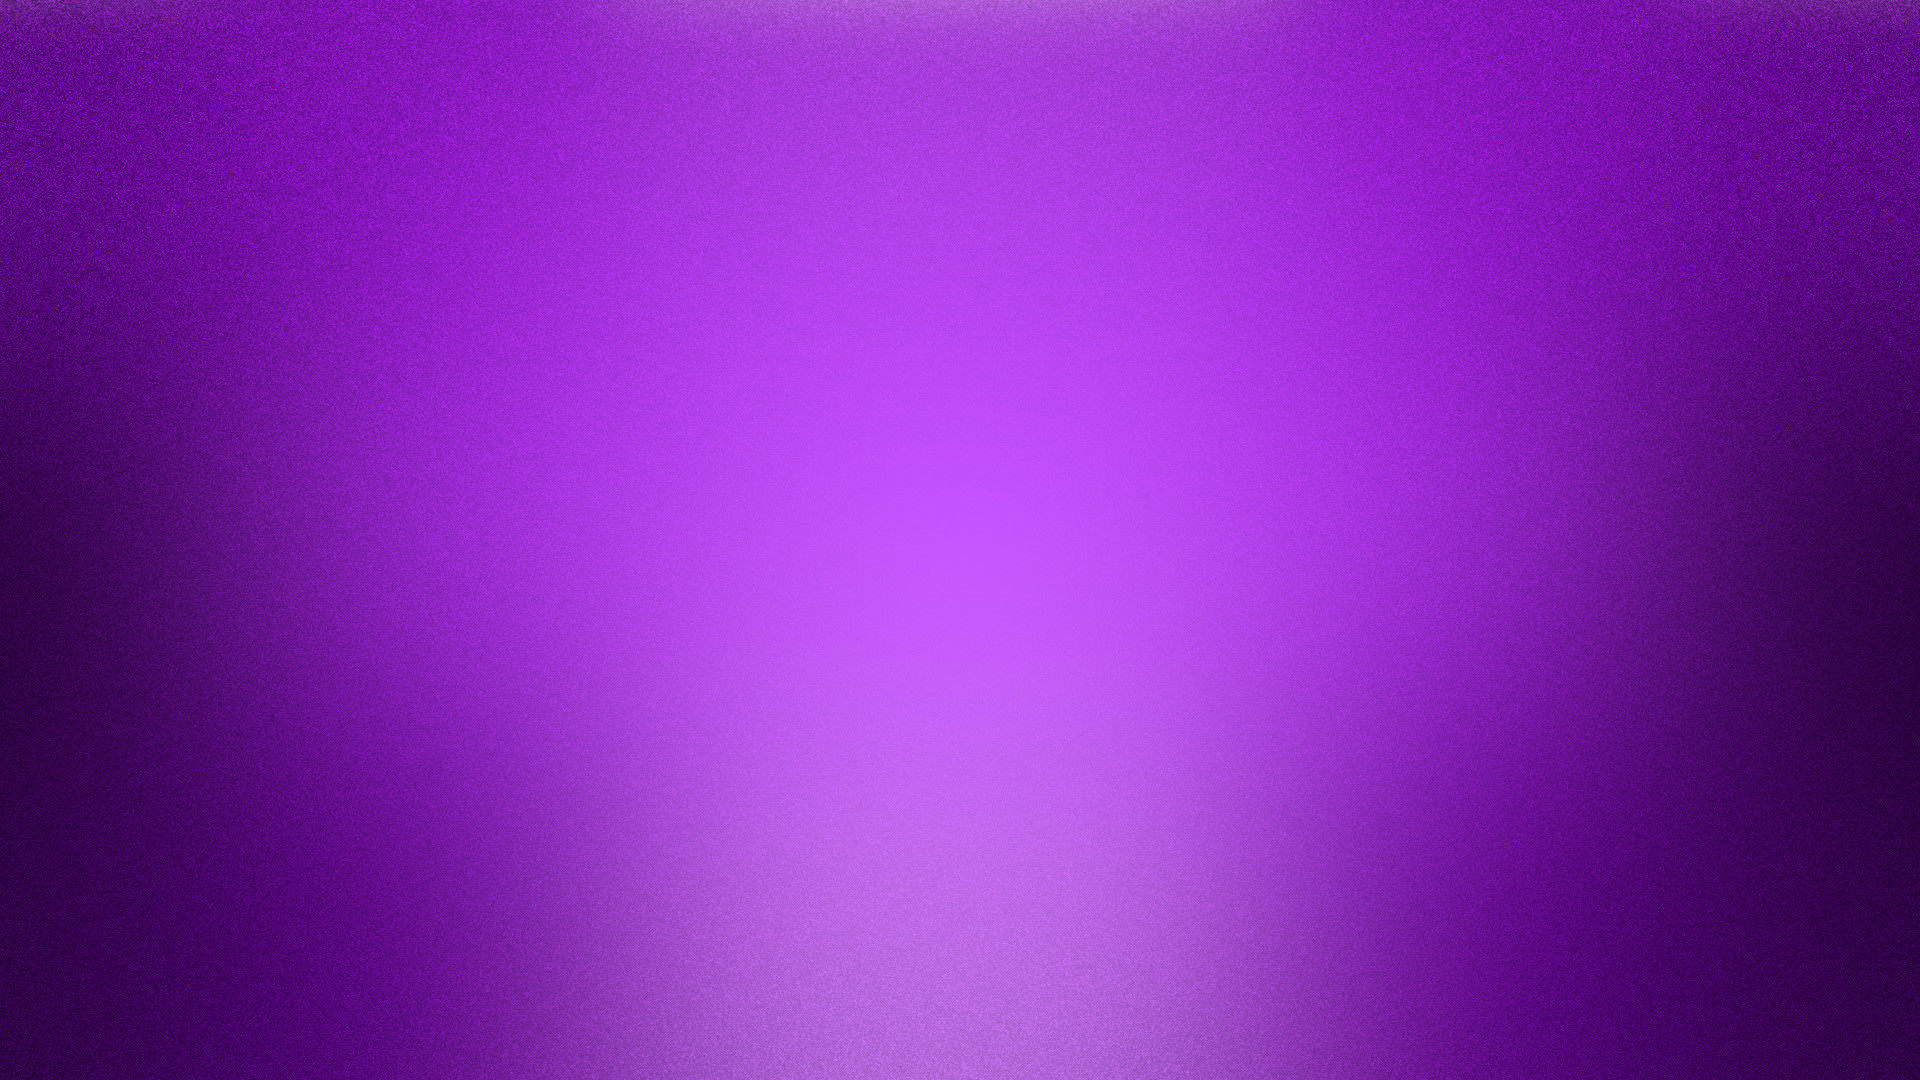 1920x1080 purple noise wallpaper 45998